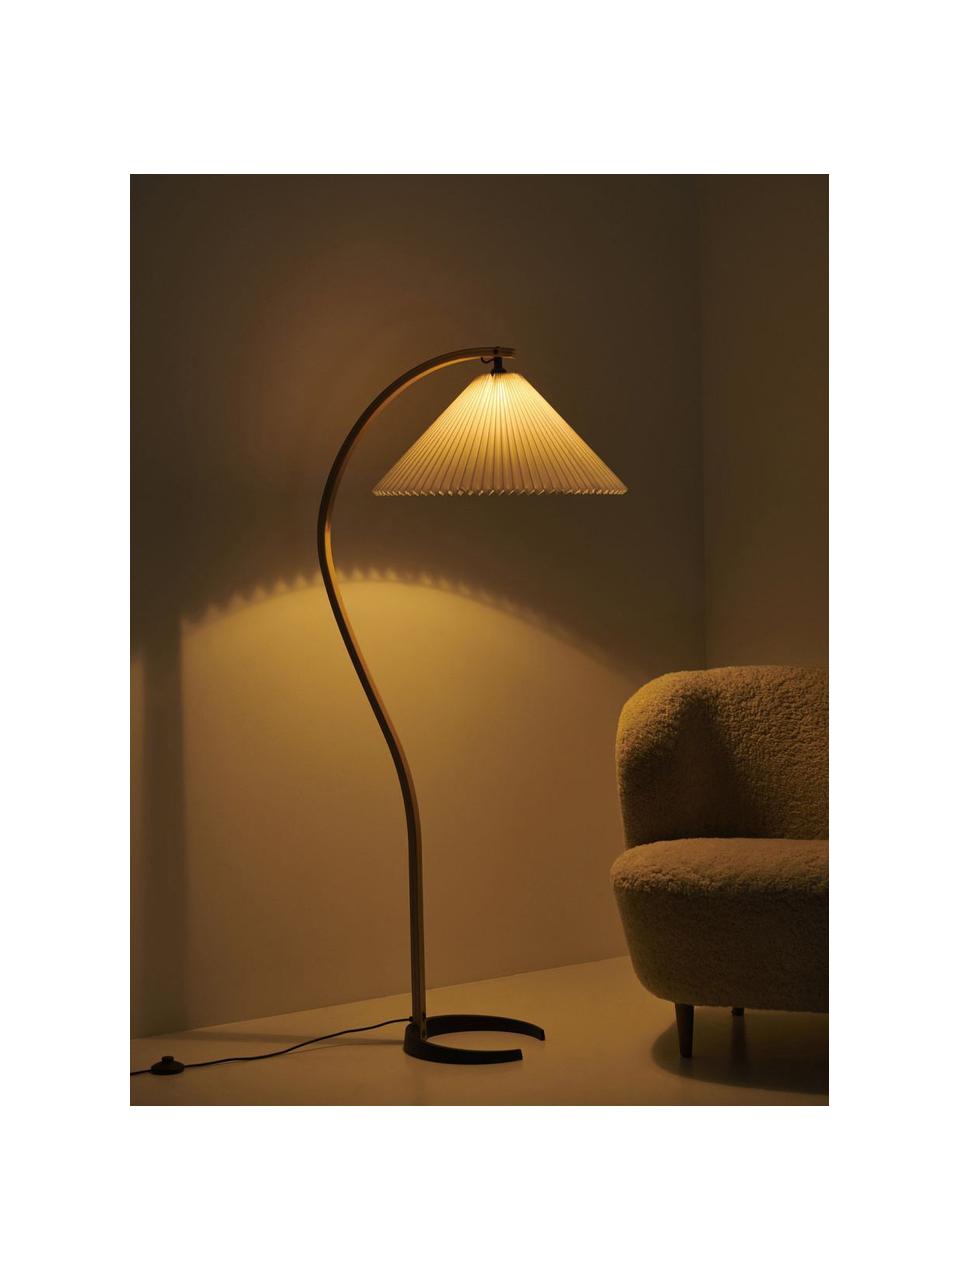 Verstellbare Stehlampe Timberline, Lampenschirm: Segeltuch, Weiss, Eichenholz, H 152 cm